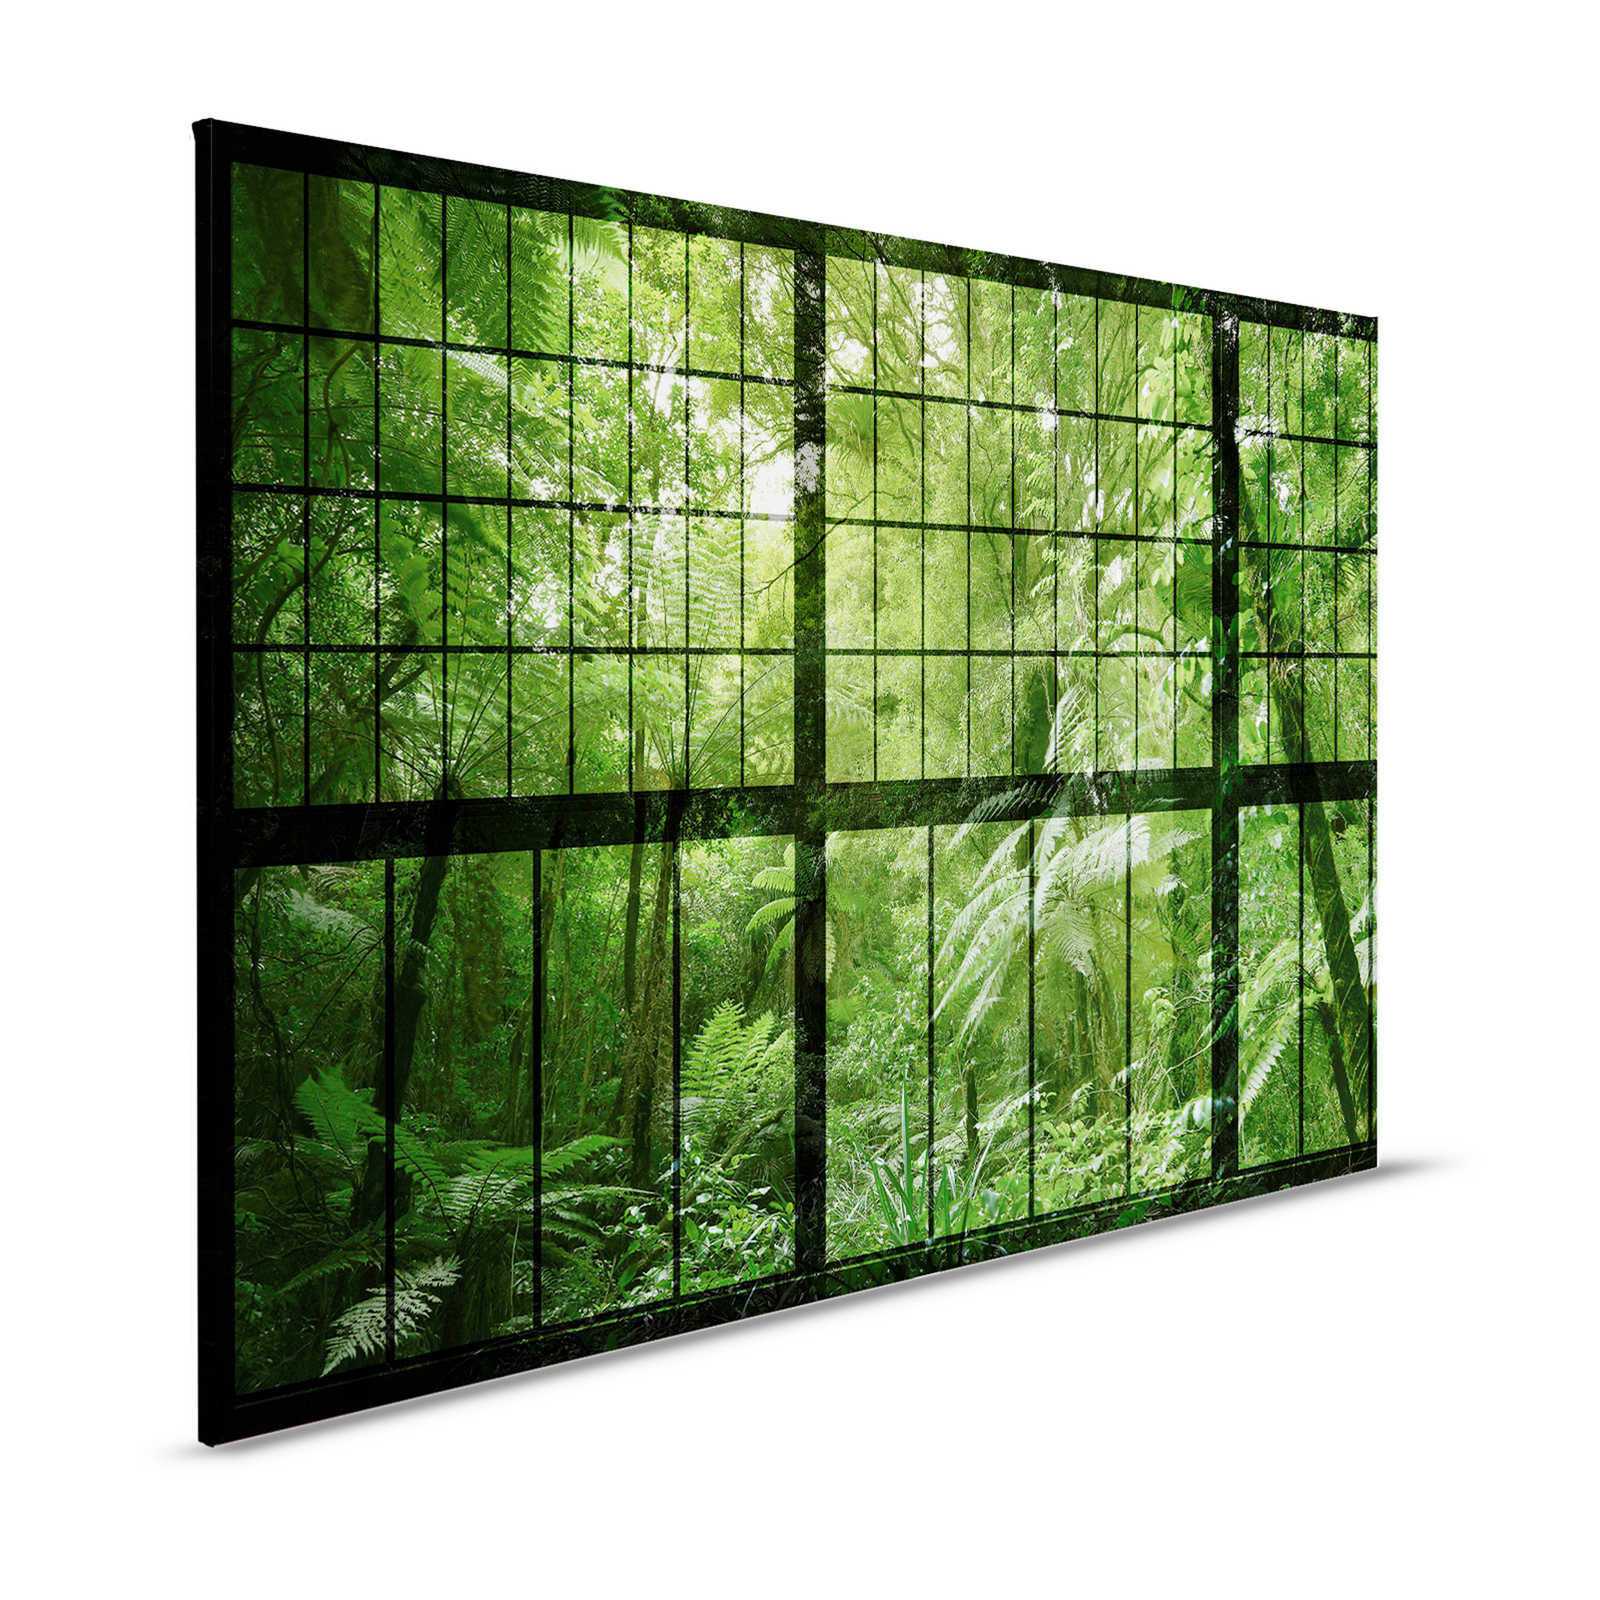 Rainforest 2 - Quadro su tela con finestra a soppalco e vista sulla giungla - 1,20 m x 0,80 m
